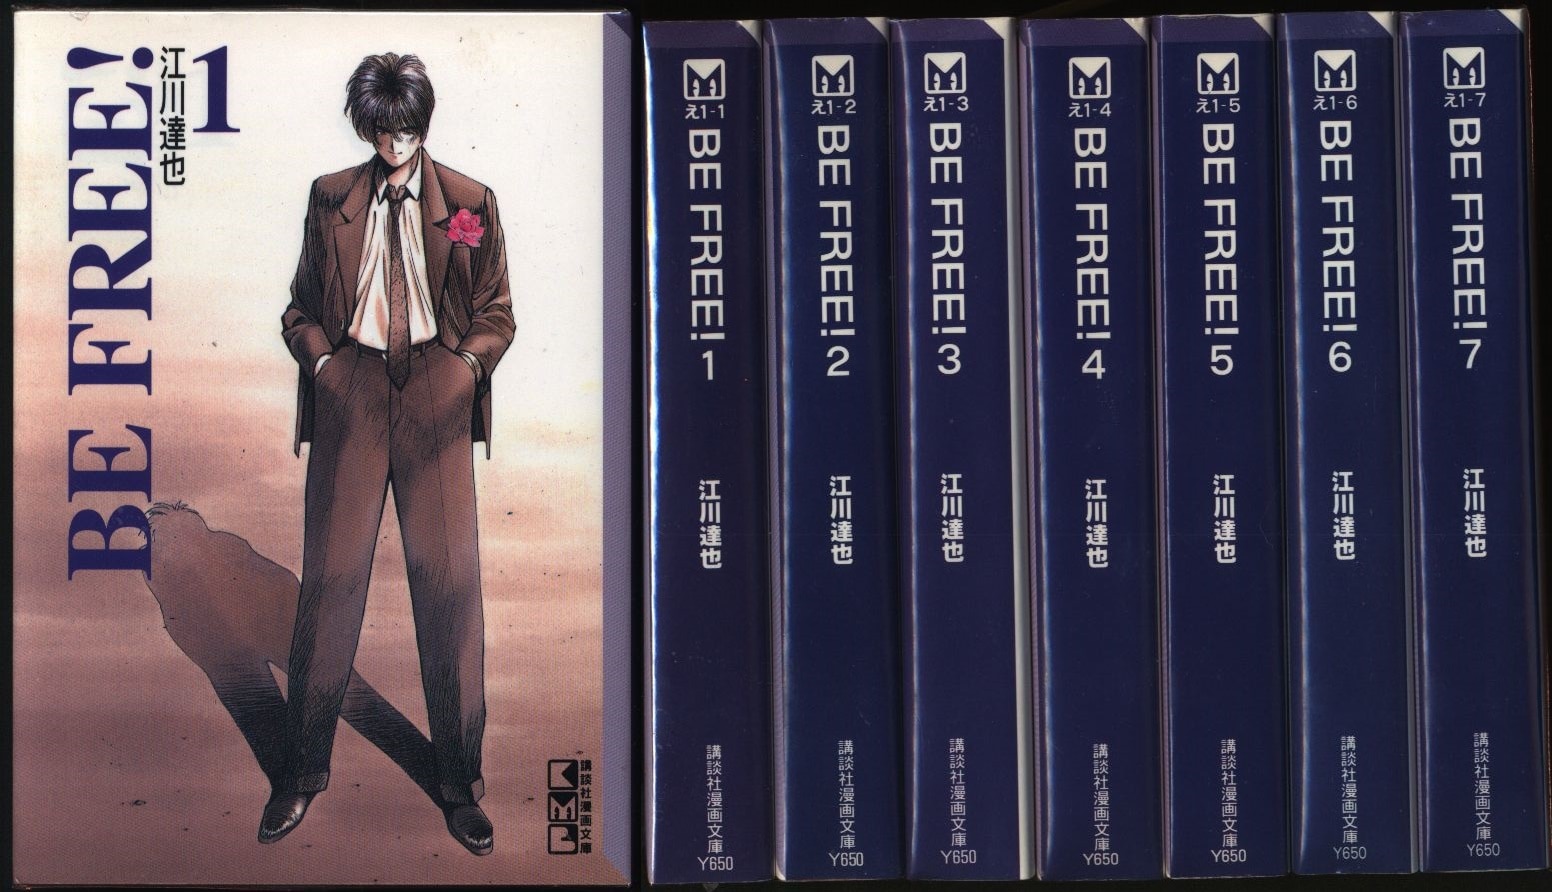 Tatsuya Egawa Be Free Paperback Version Complete 7 Volume Set Mandarake Online Shop